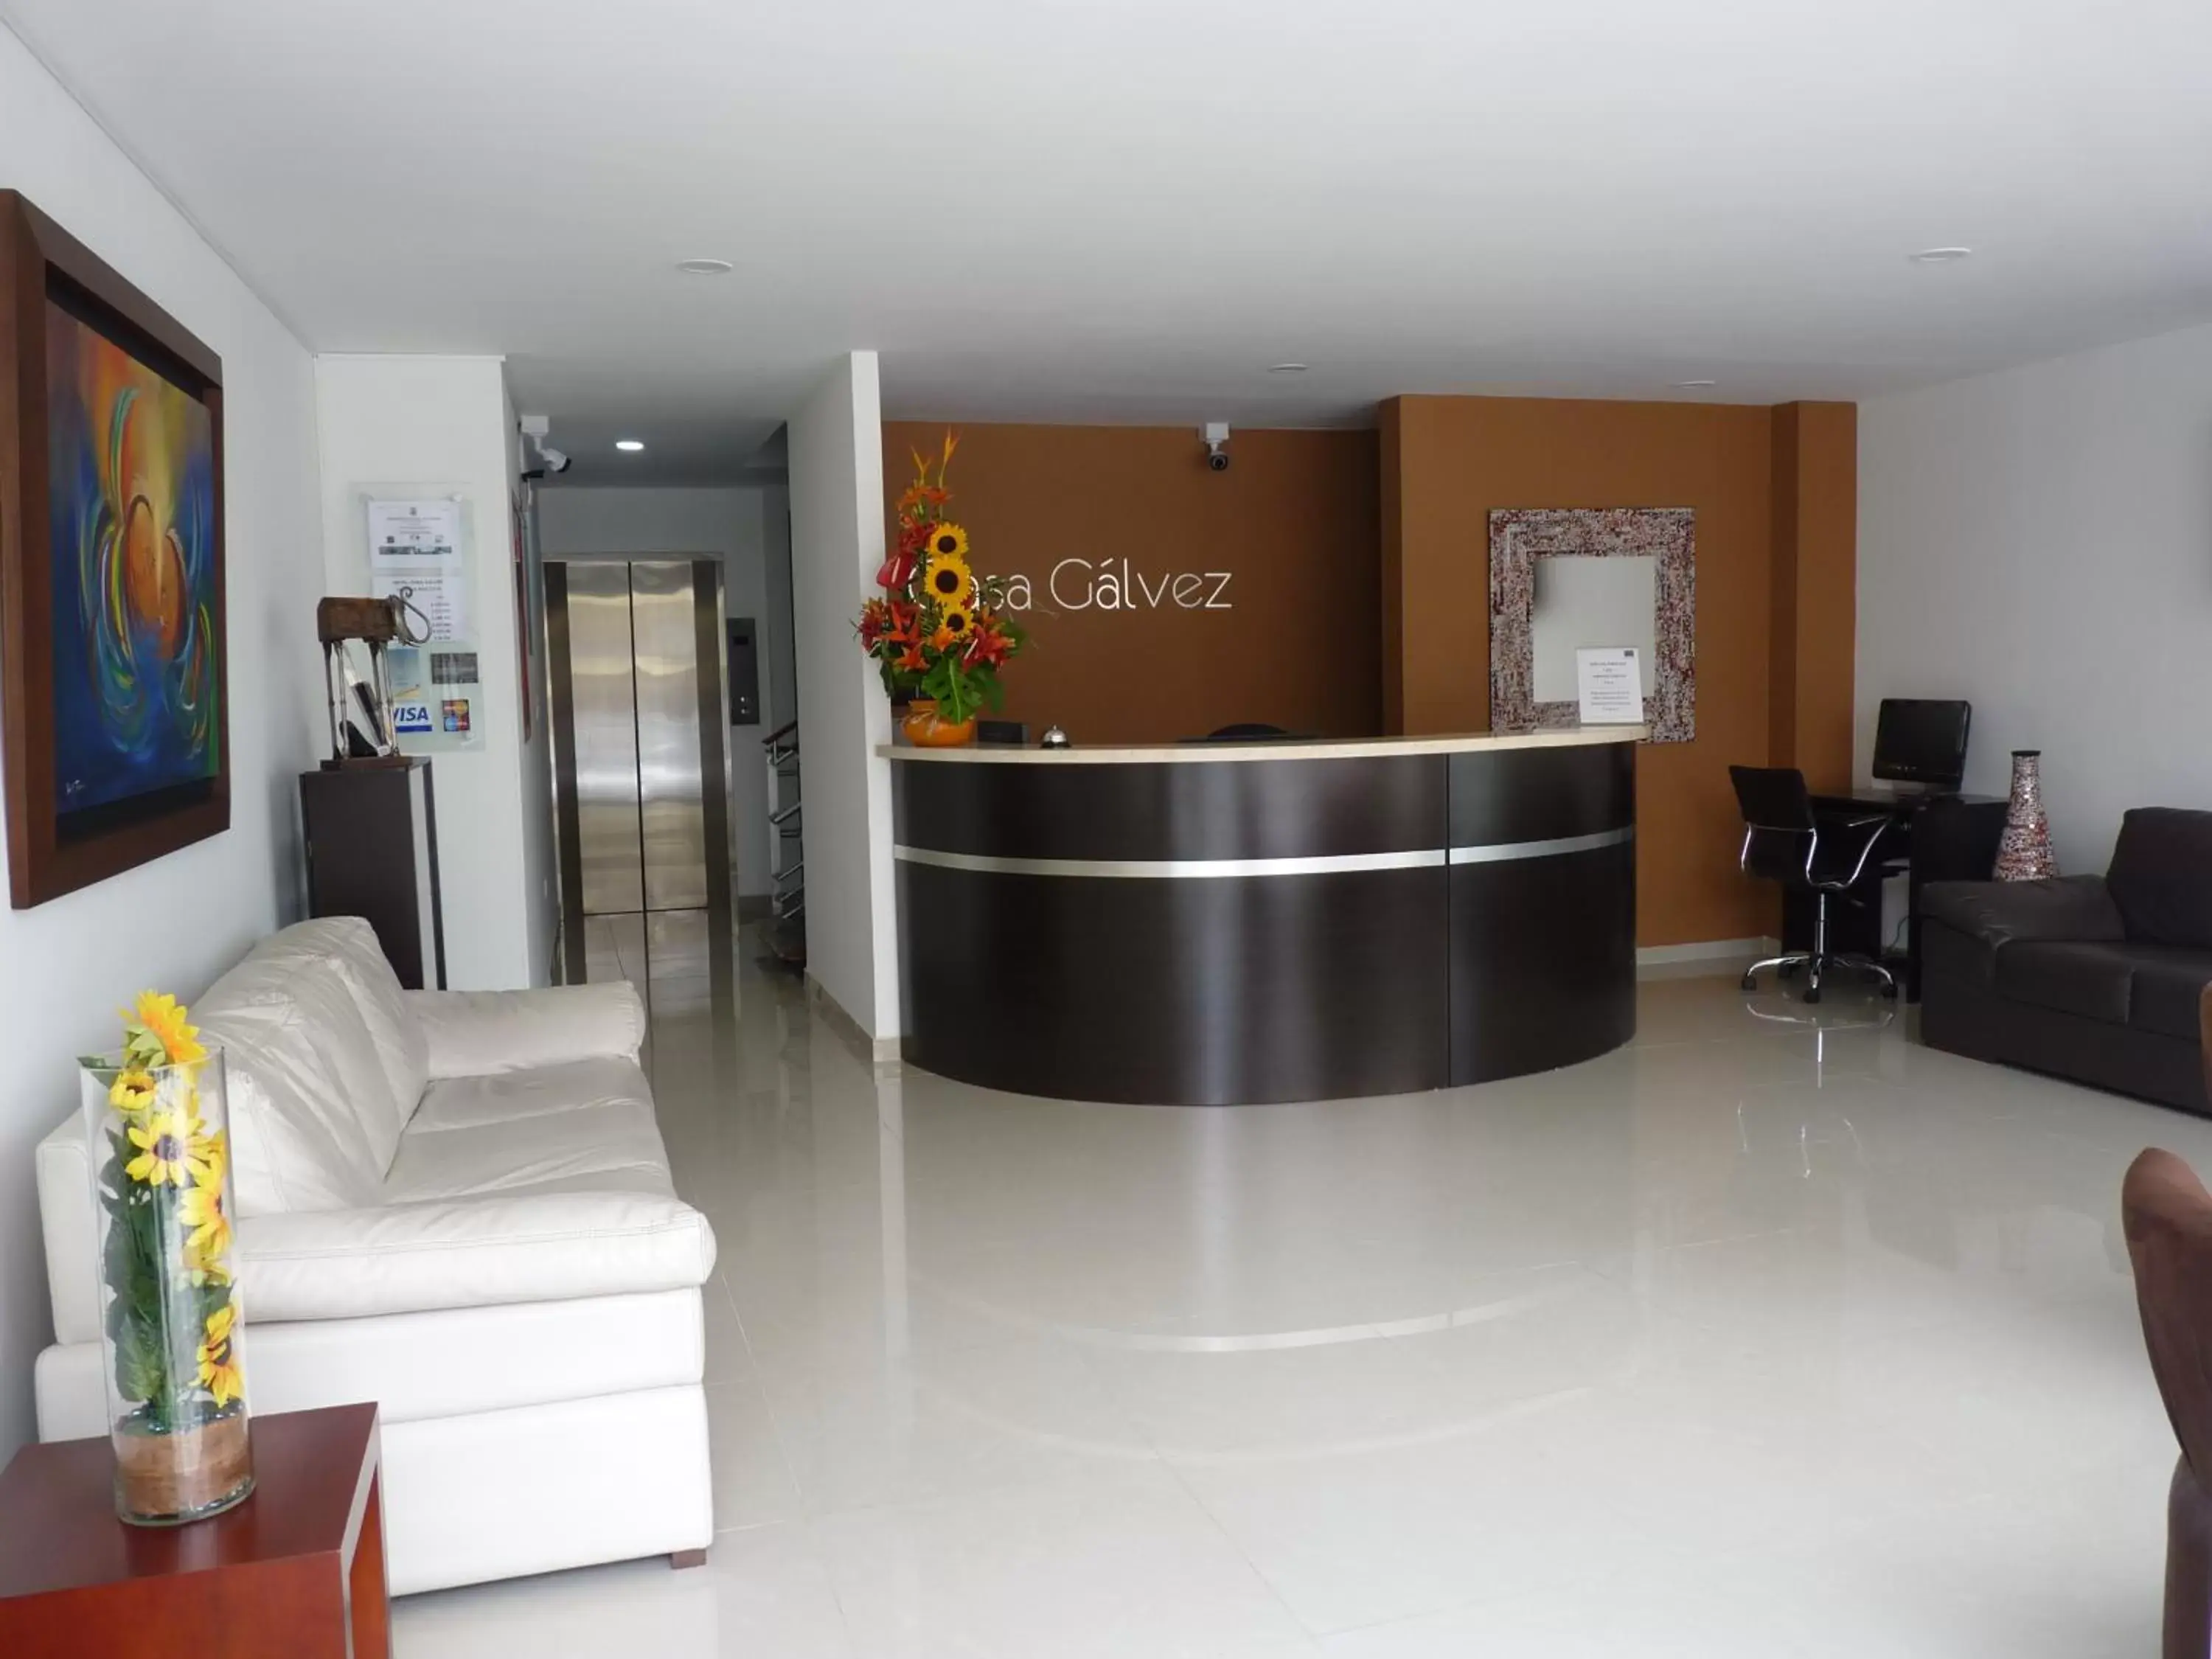 Lobby or reception in Hotel Casa Galvez